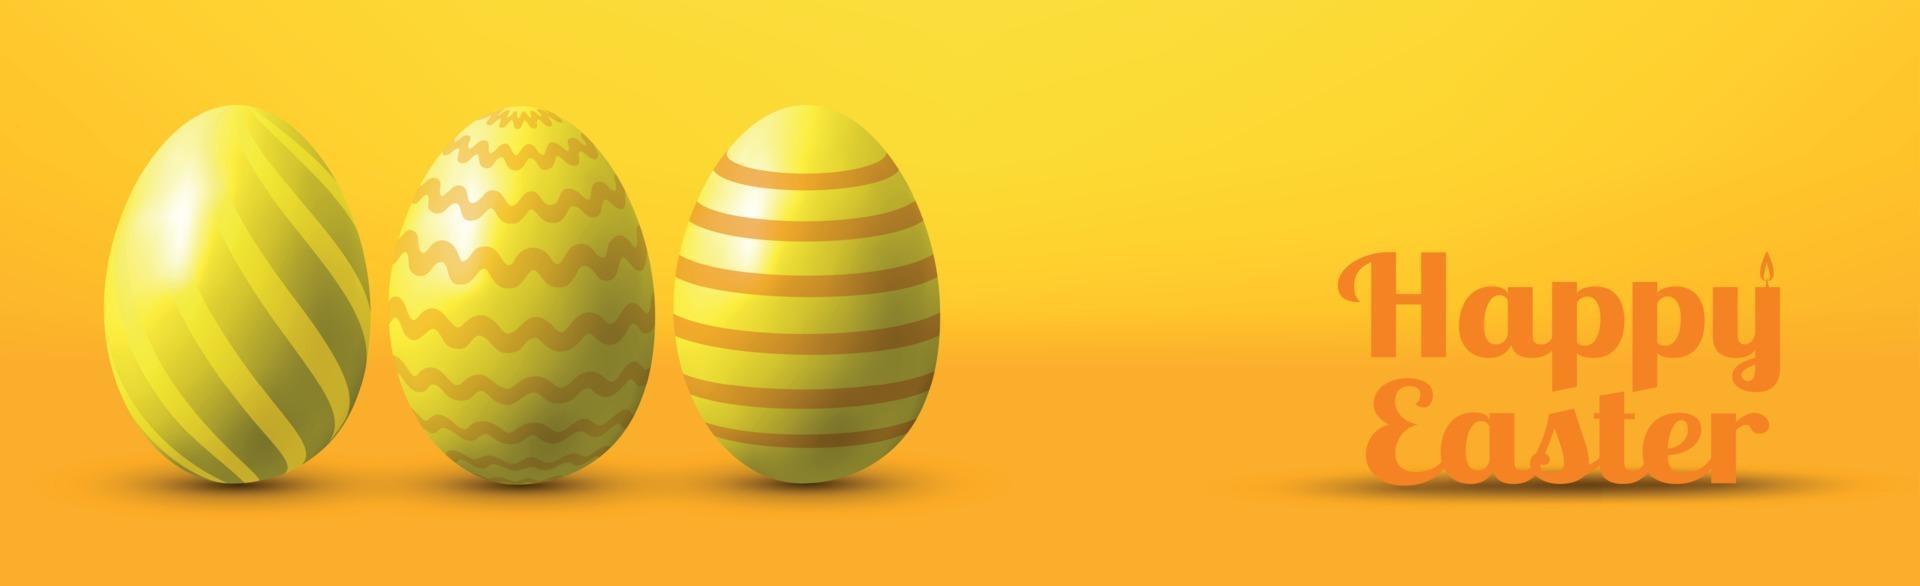 målade ägg på gul bakgrund med gratulationer till påsk - vektorillustration vektor